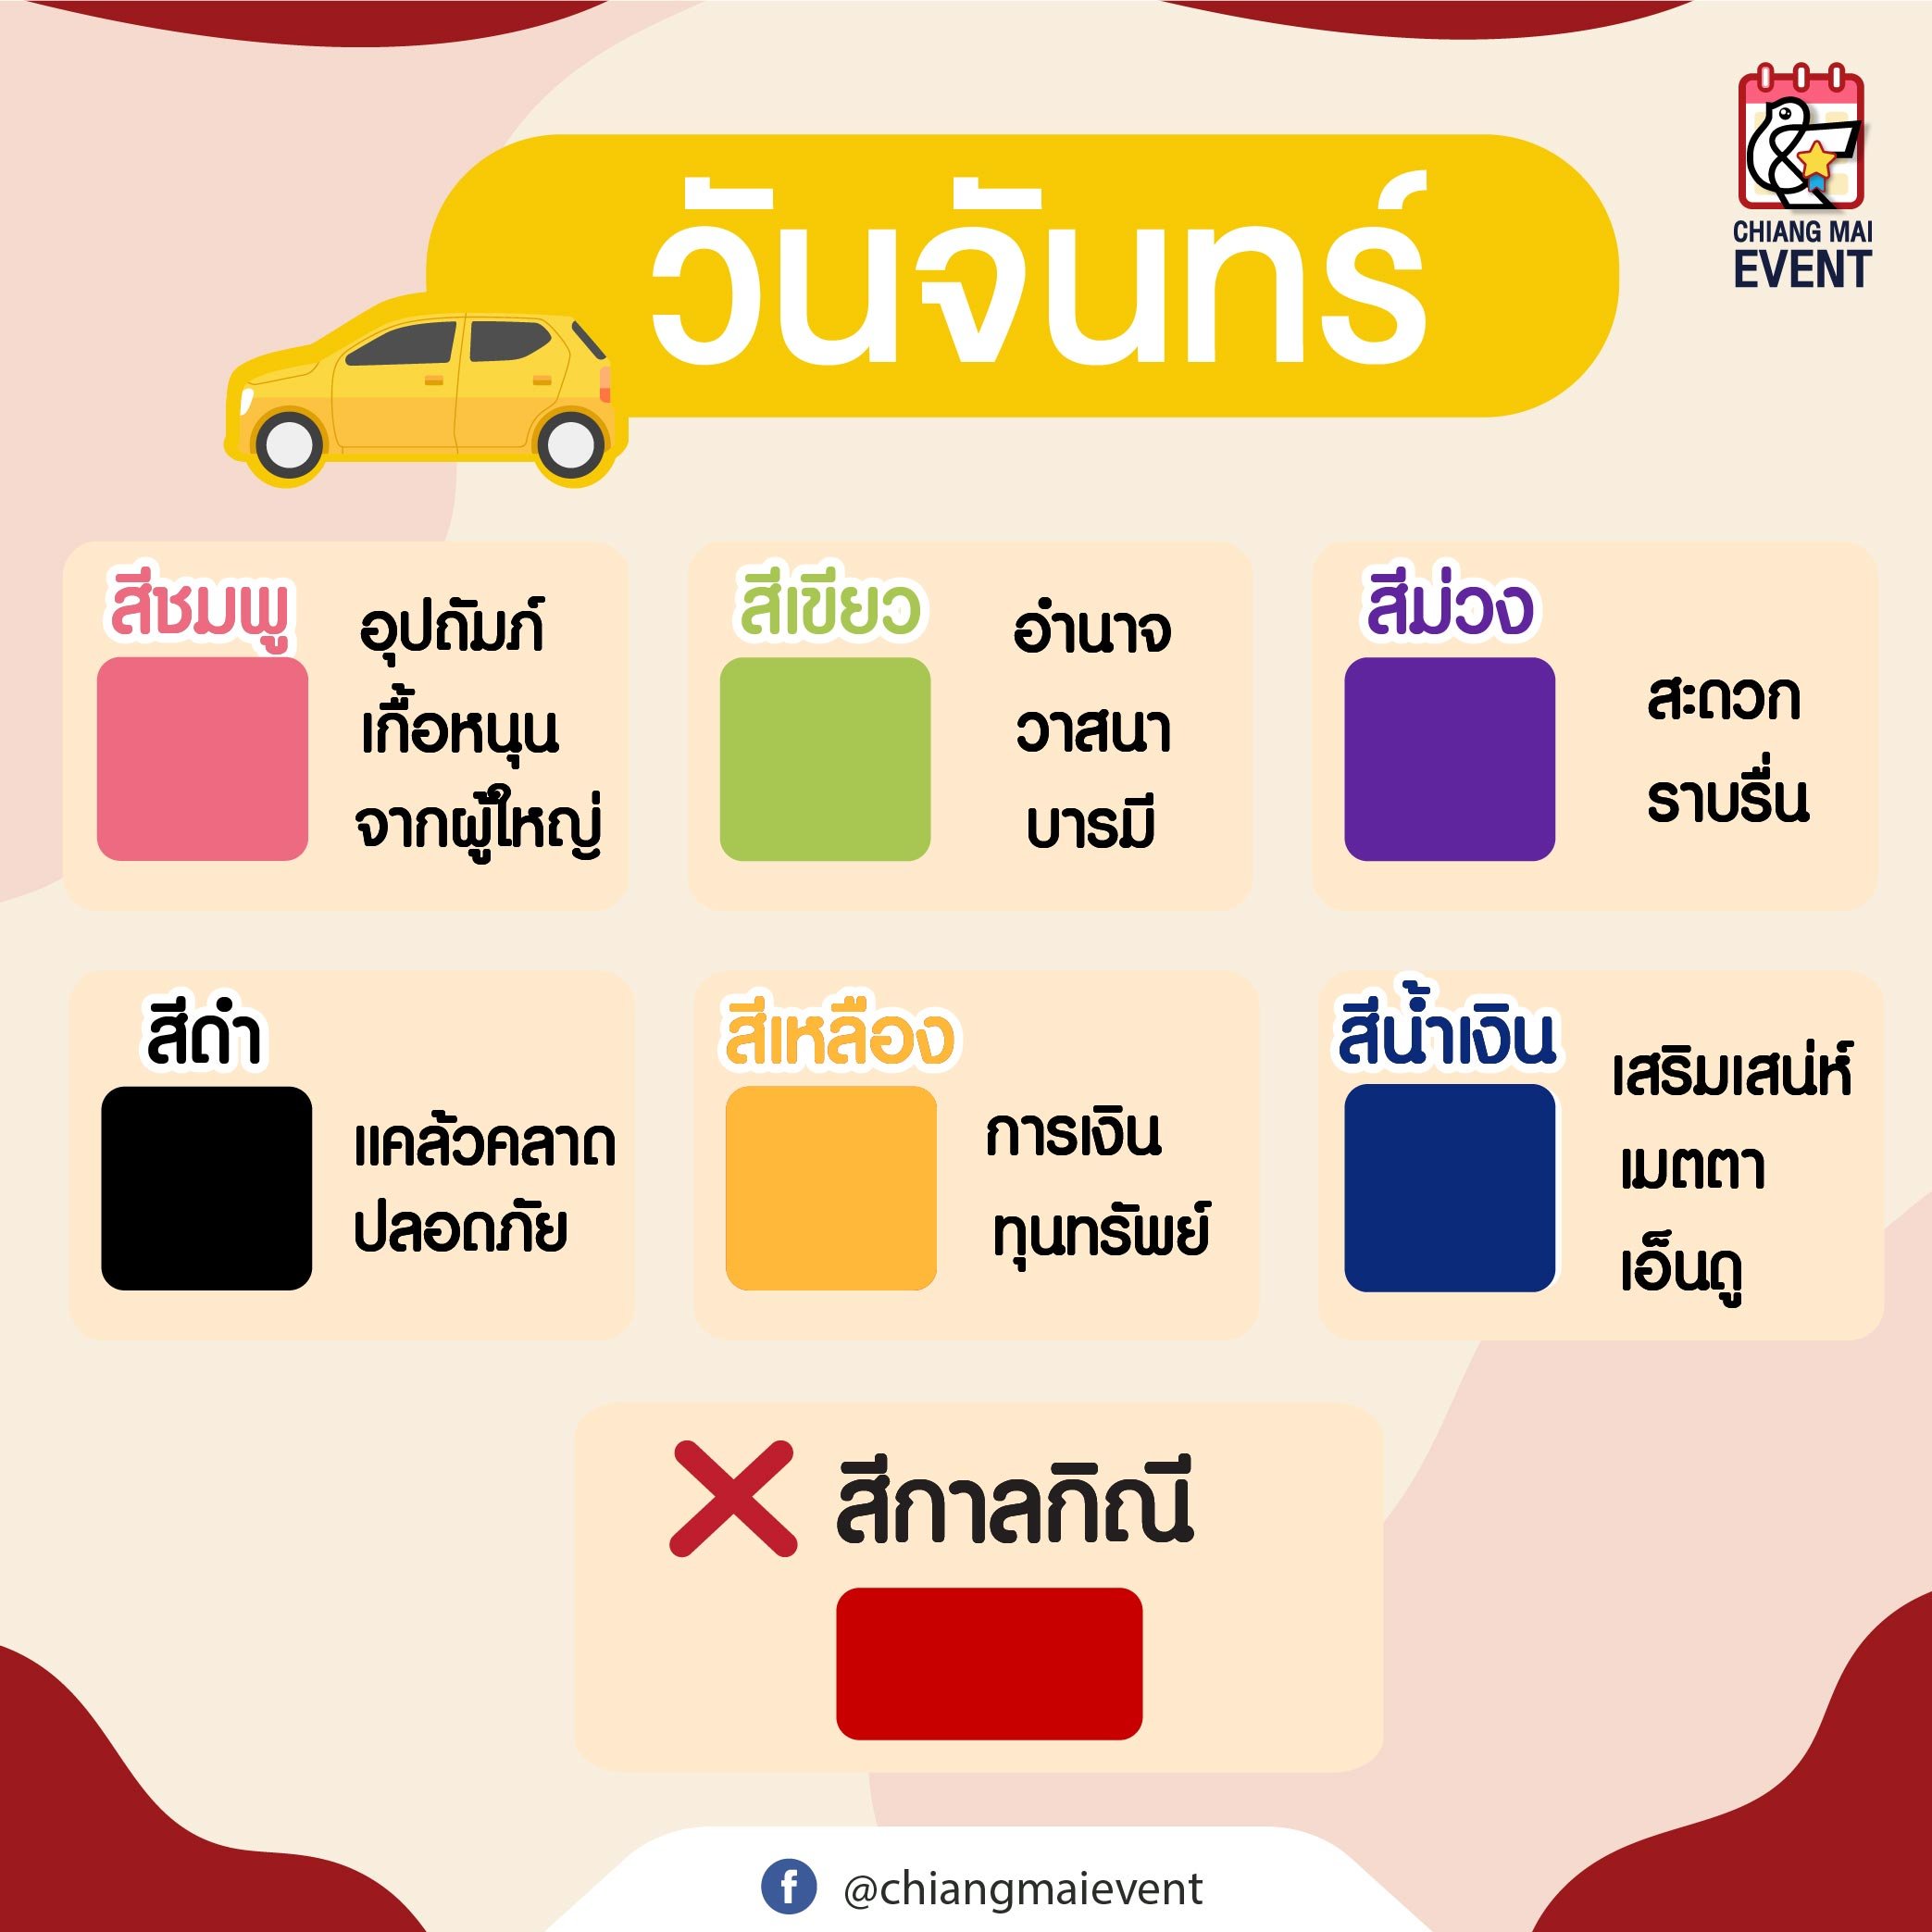 สายมูต้องรู้! สีรถถูกโฉลกตามวันเกิด สีไหนรุ่ง สีไหนปังเช็กเลย - Chiang Mai  News